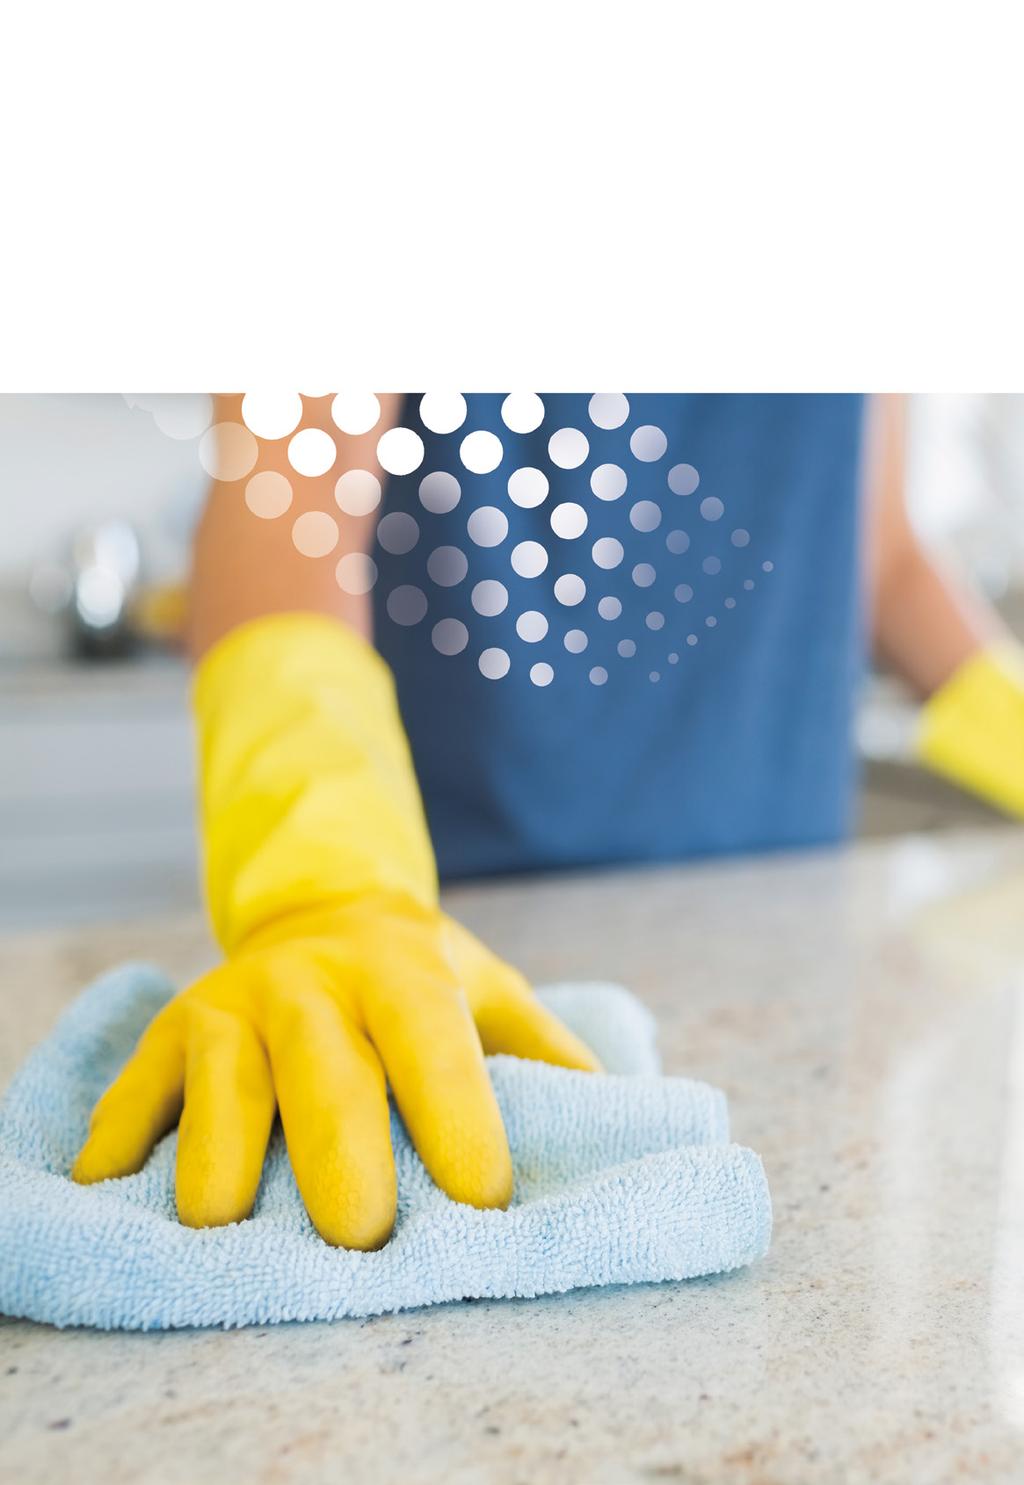 Utrzymanie czystości wymaga odpowiednio dobranych preparatów do miejsca aplikacji.